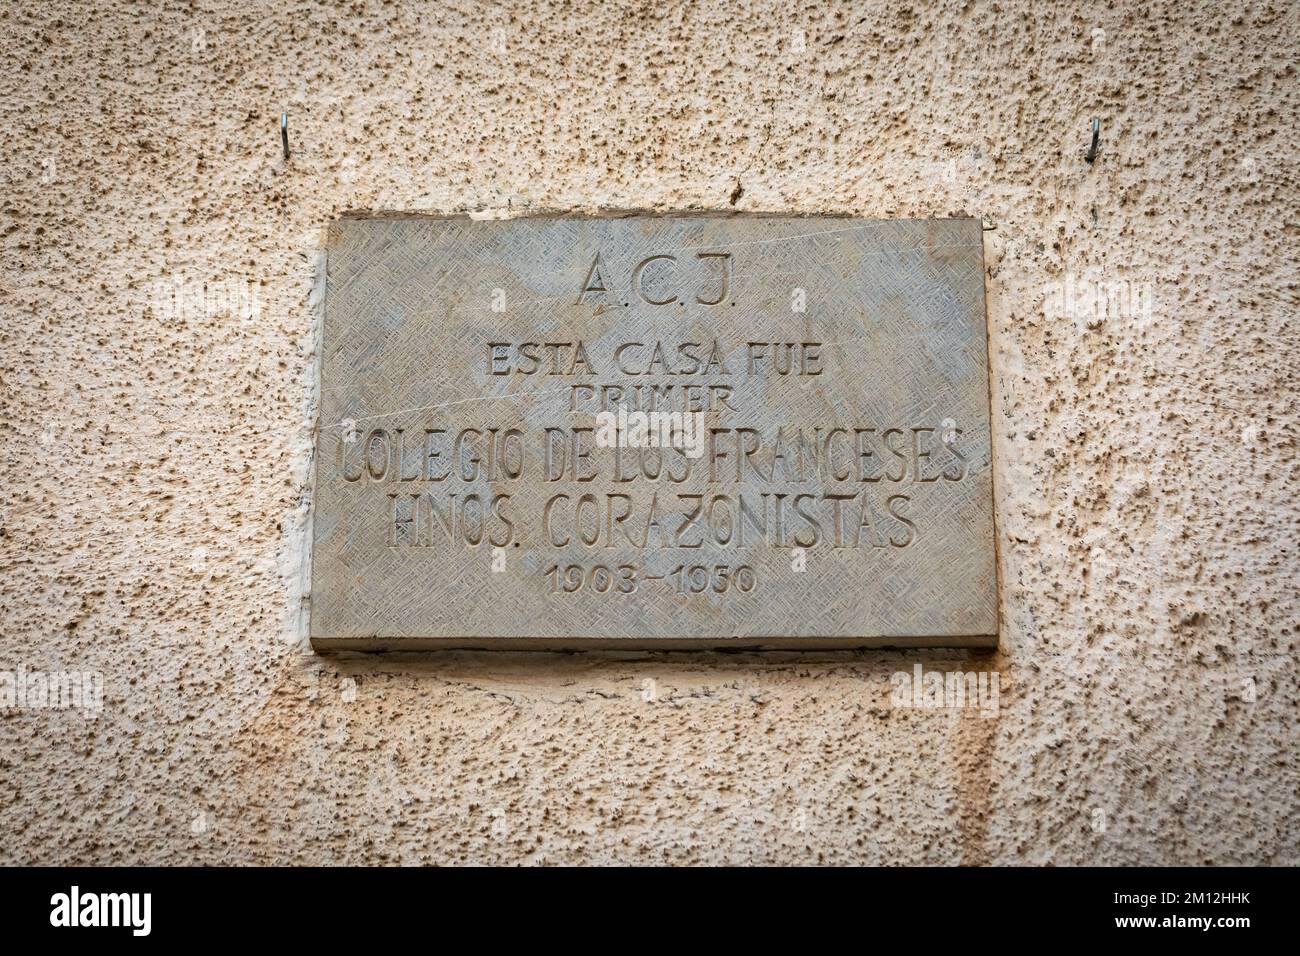 Colegio de los Franceses Hnos. Corazonistas steet sign. Jaca, Jacetania, Huesca, Aragón, Spain. Stock Photo